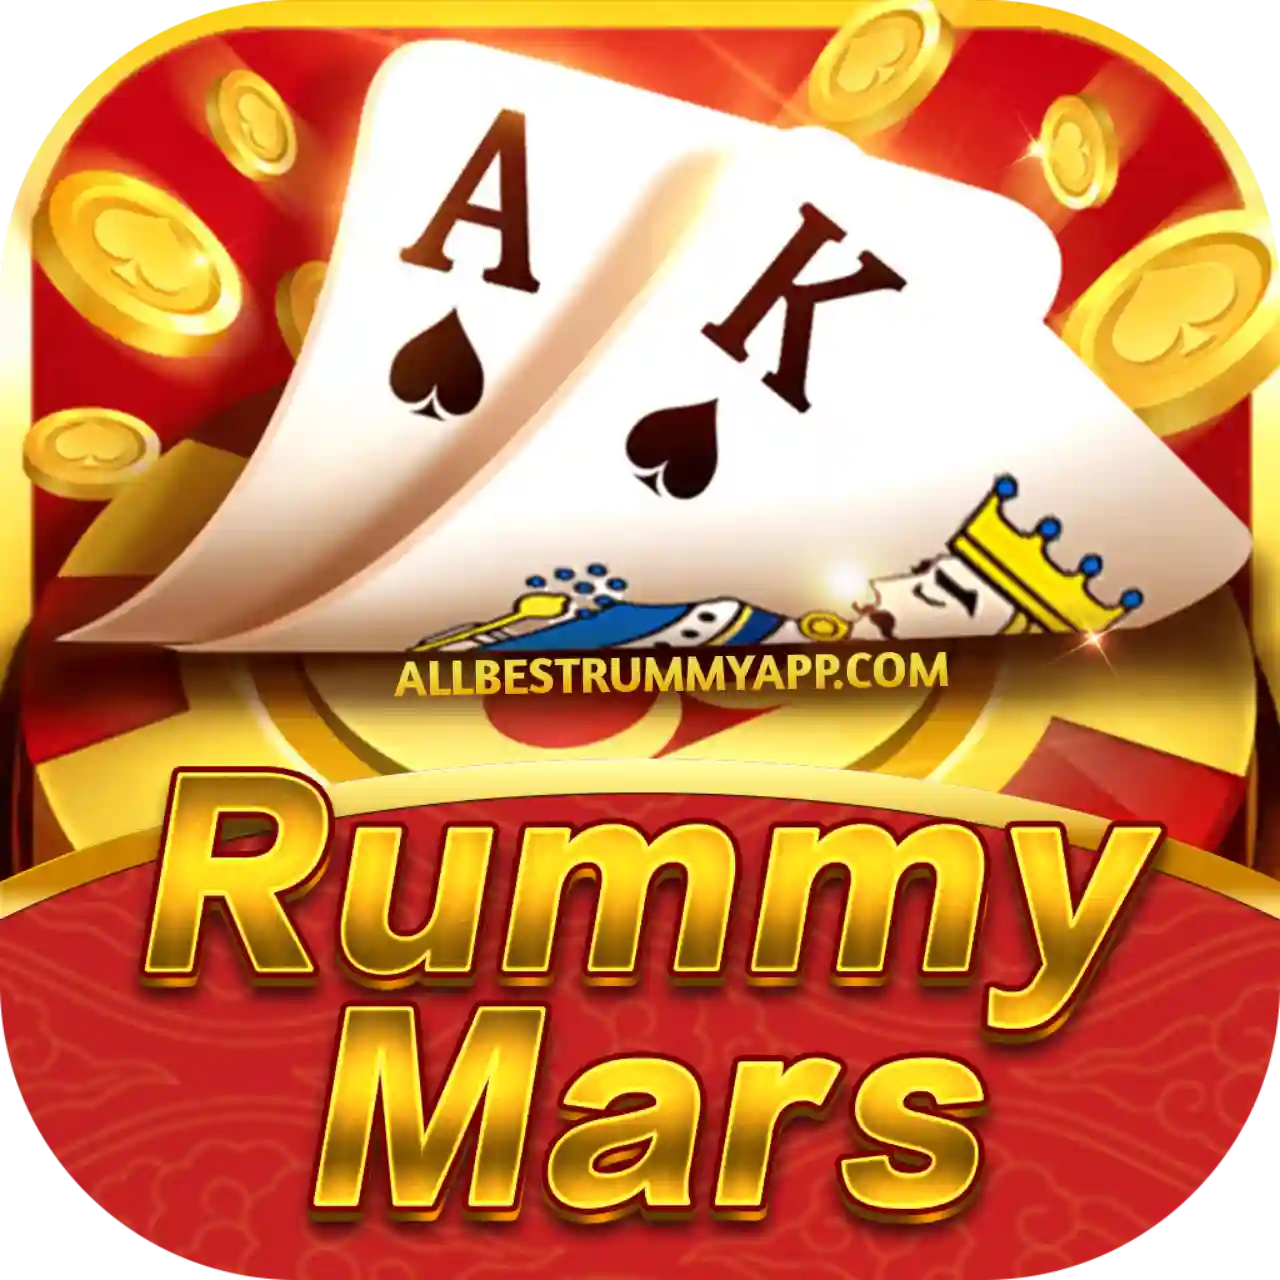 Rummy Mars Logo - All Best Rummy App